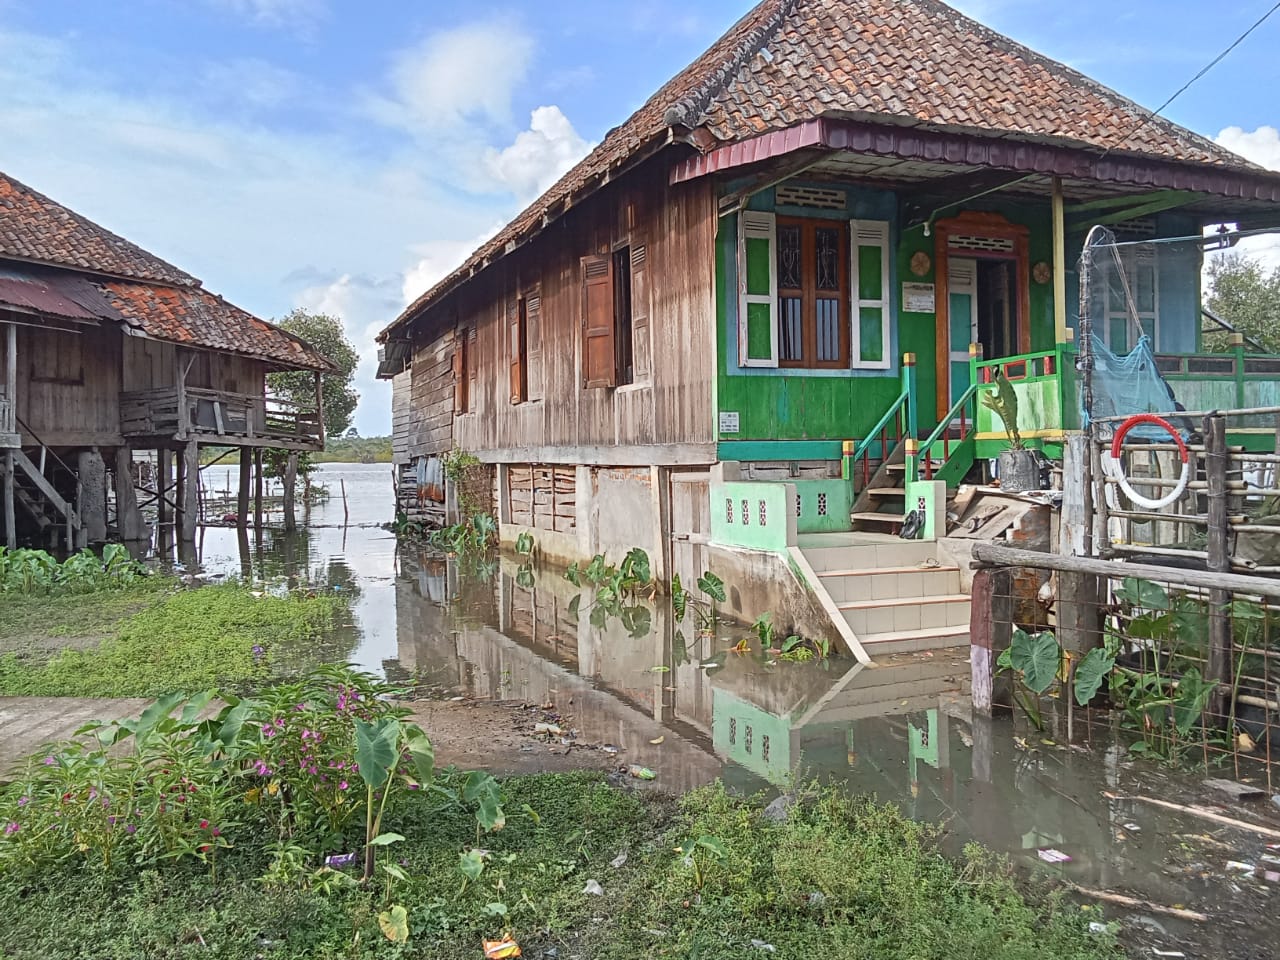 Banjir Melanda Ratusan Rumah, Warga Tak Mengungsi Tapi Tanaman Pangan Terendam